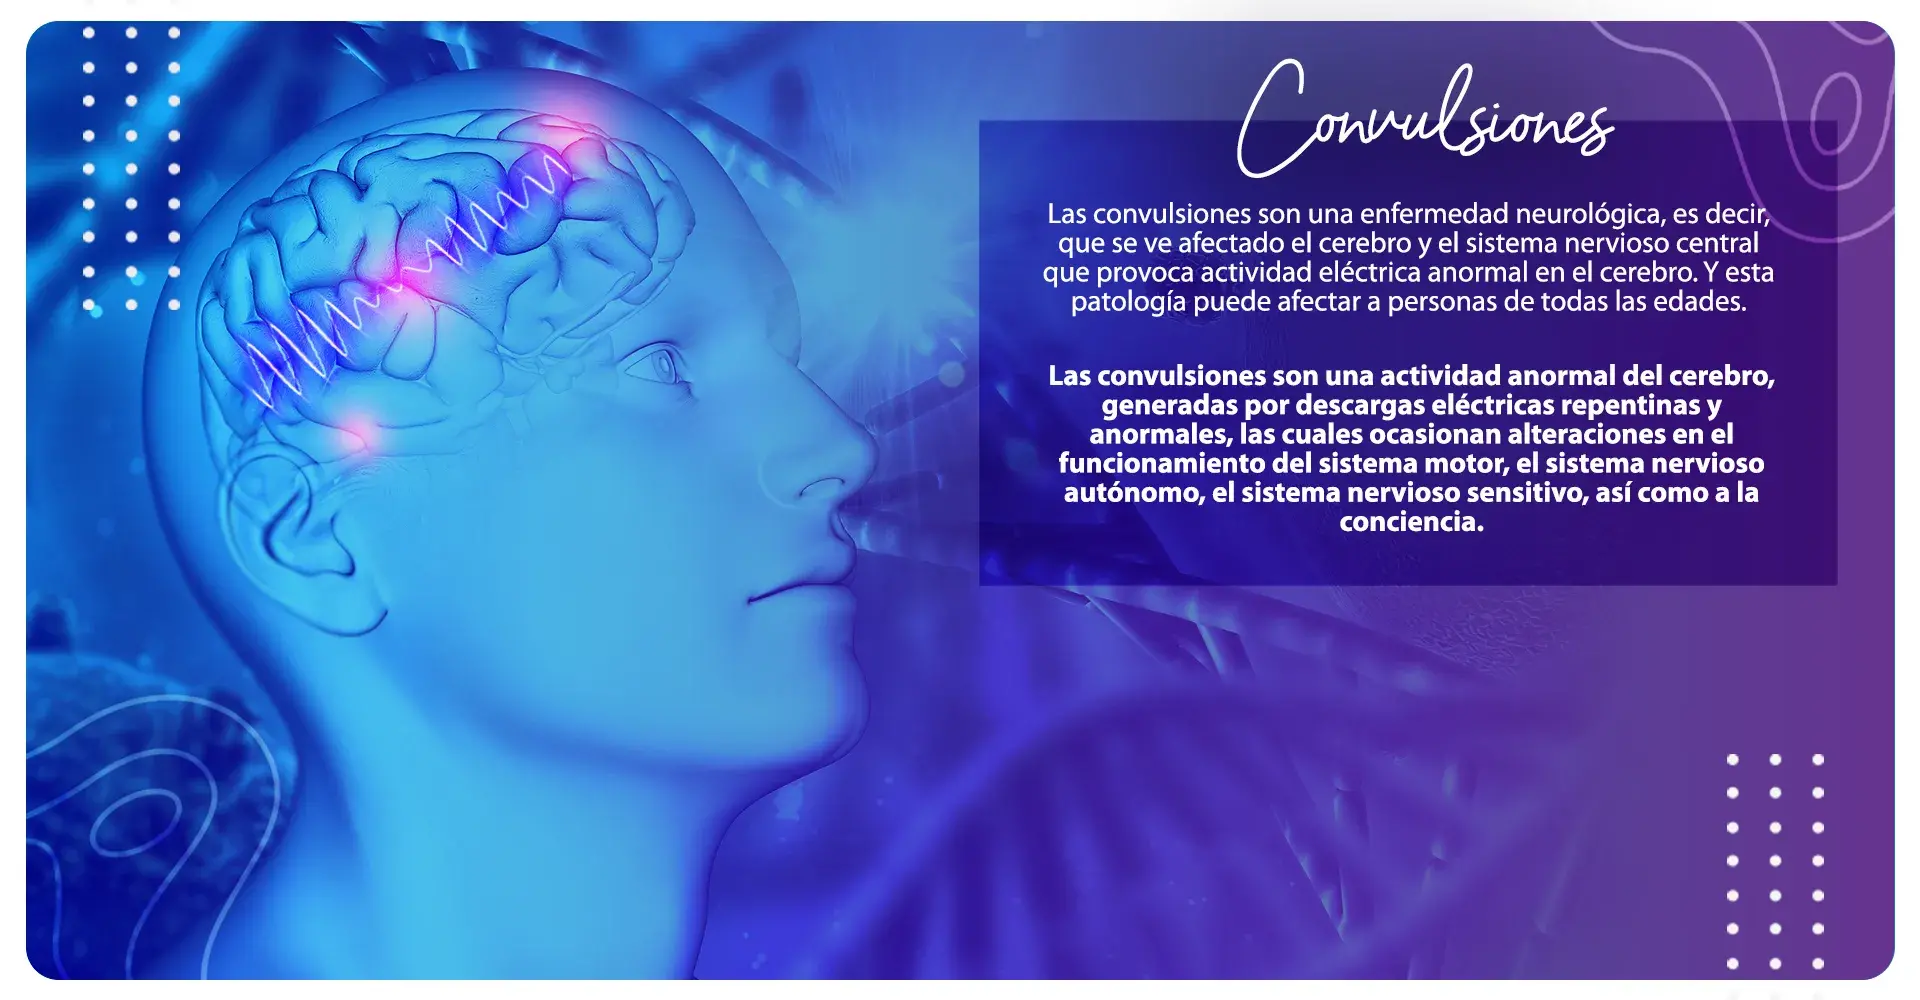 Las convulsiones afectan al cerebro y al sistema nervioso